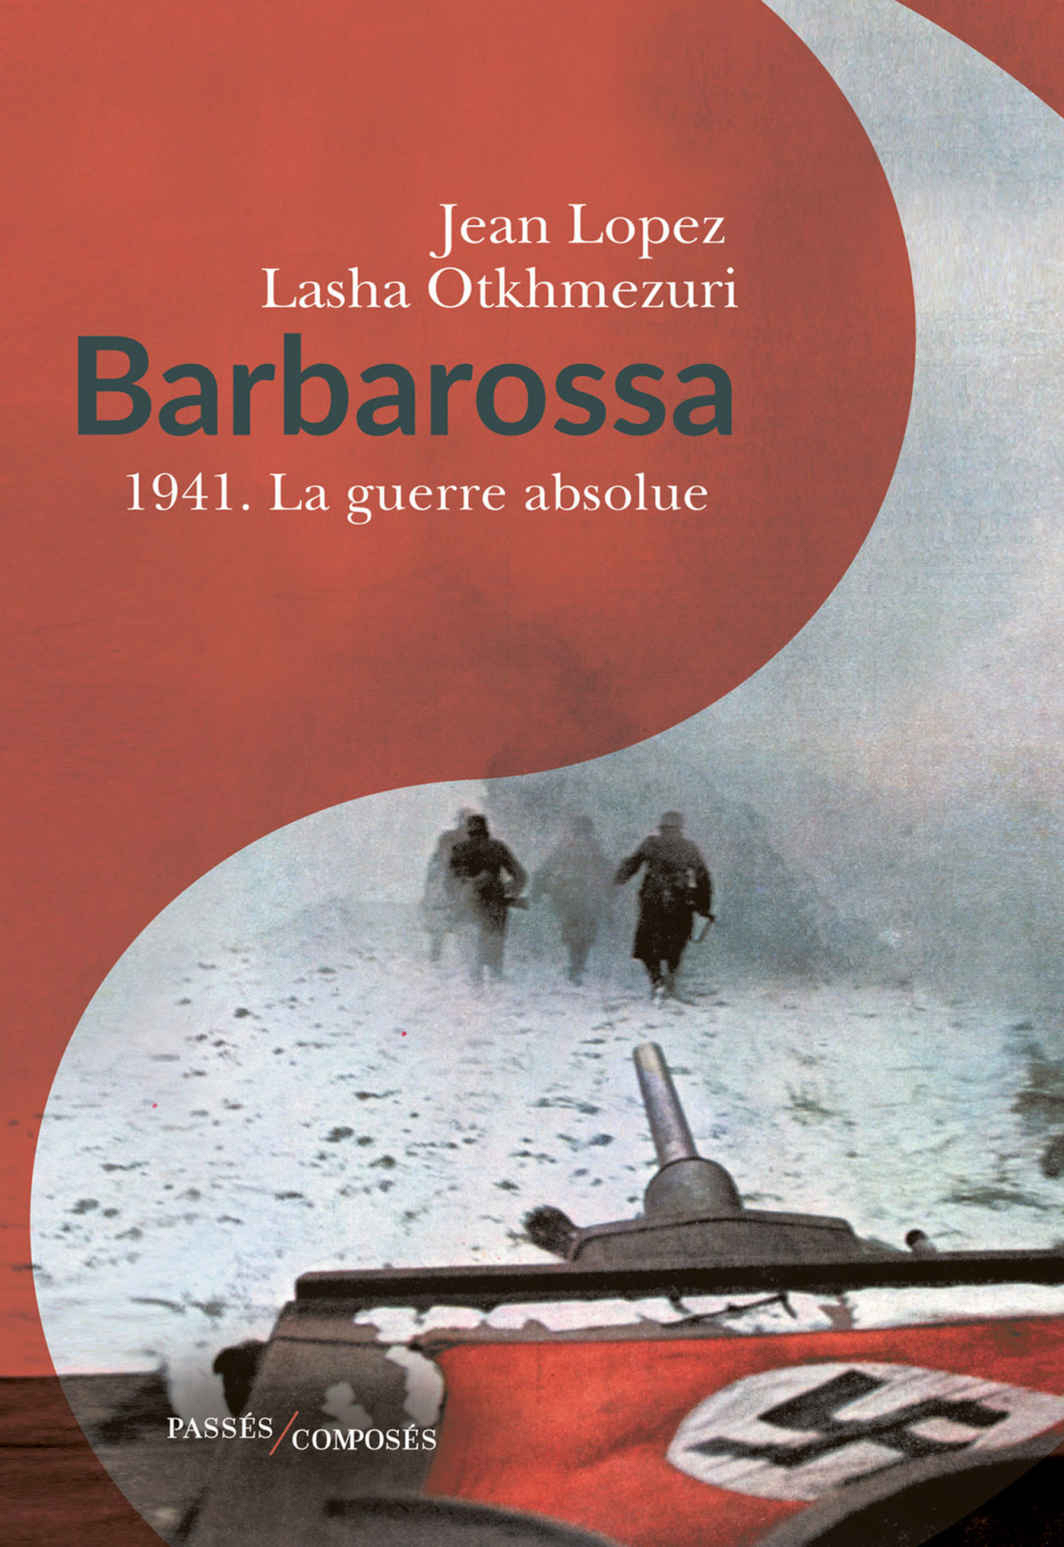 Le Prix Chateaubriand 2019 décerné à Jean Lopez et Lasha Otkhmrzuri pour « Barbarossa, 1941 La Guerre Absolue »